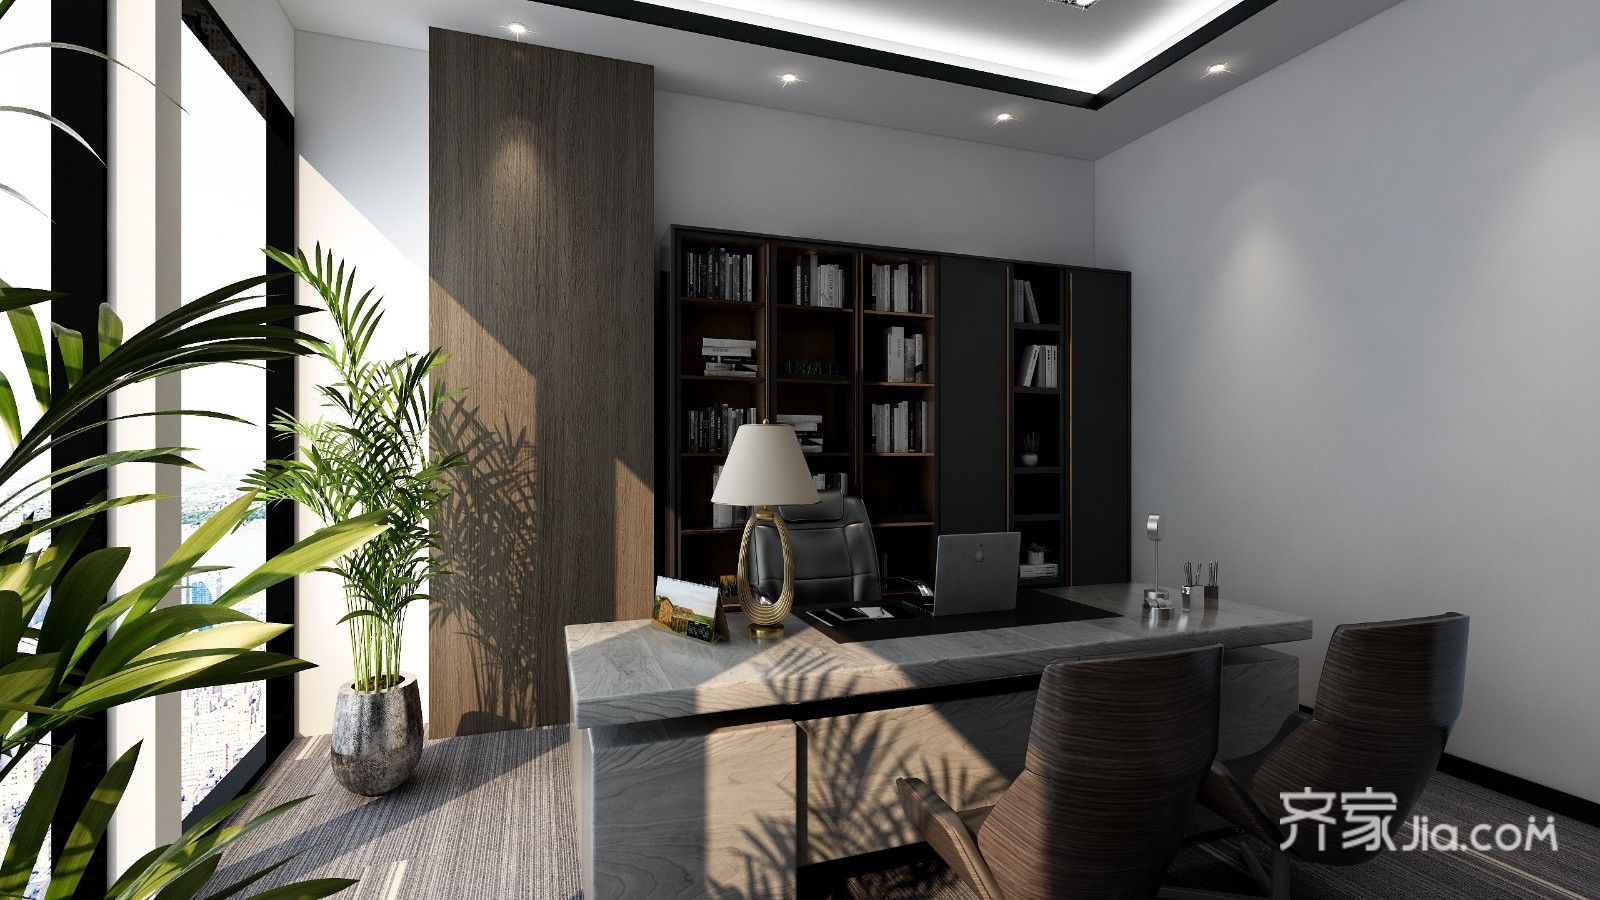 现代简约办公室装修,能达到简洁明快,宽敞舒适的效果.